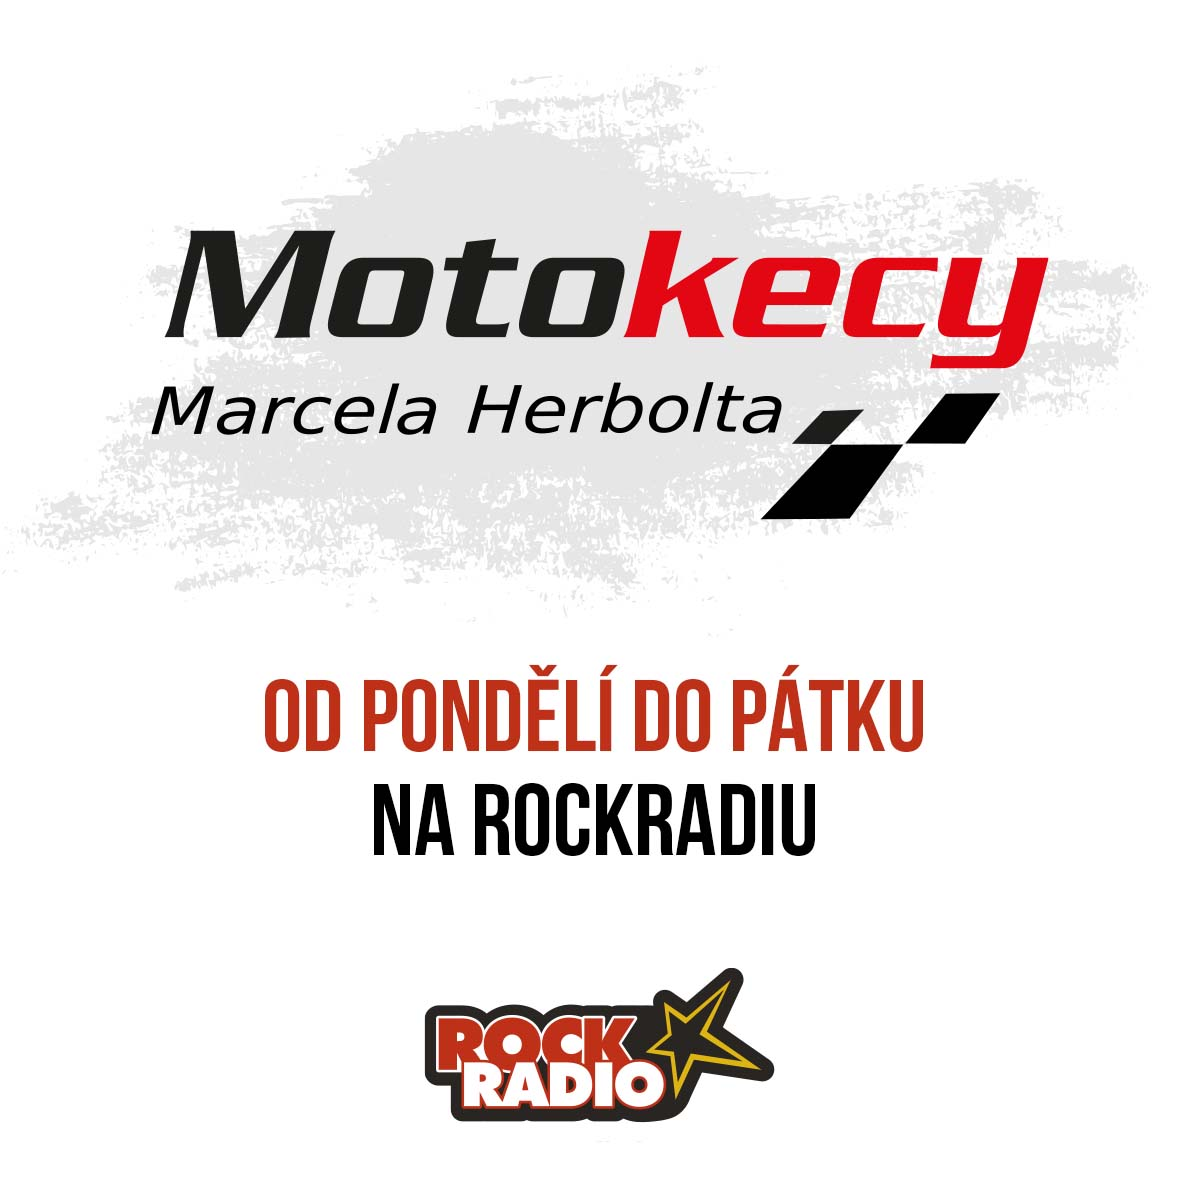 Motokecy Marcela Herbolta na úterý 03. října